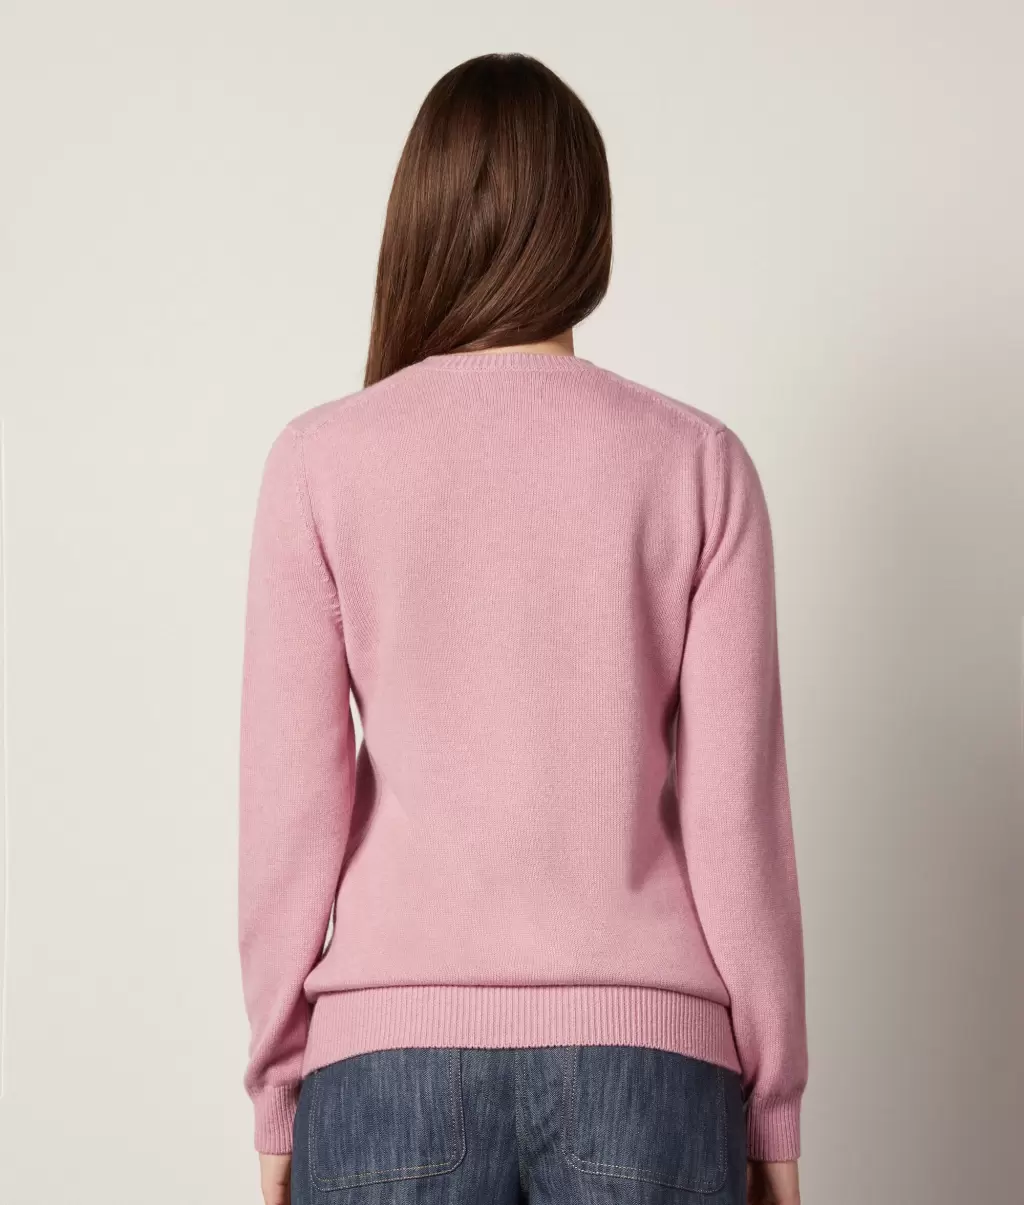 Swetry Z Okrągłym Dekoltem Pulower Z Kaszmiru Ultrasoft Pale_Pink Falconeri Kobieta - 2